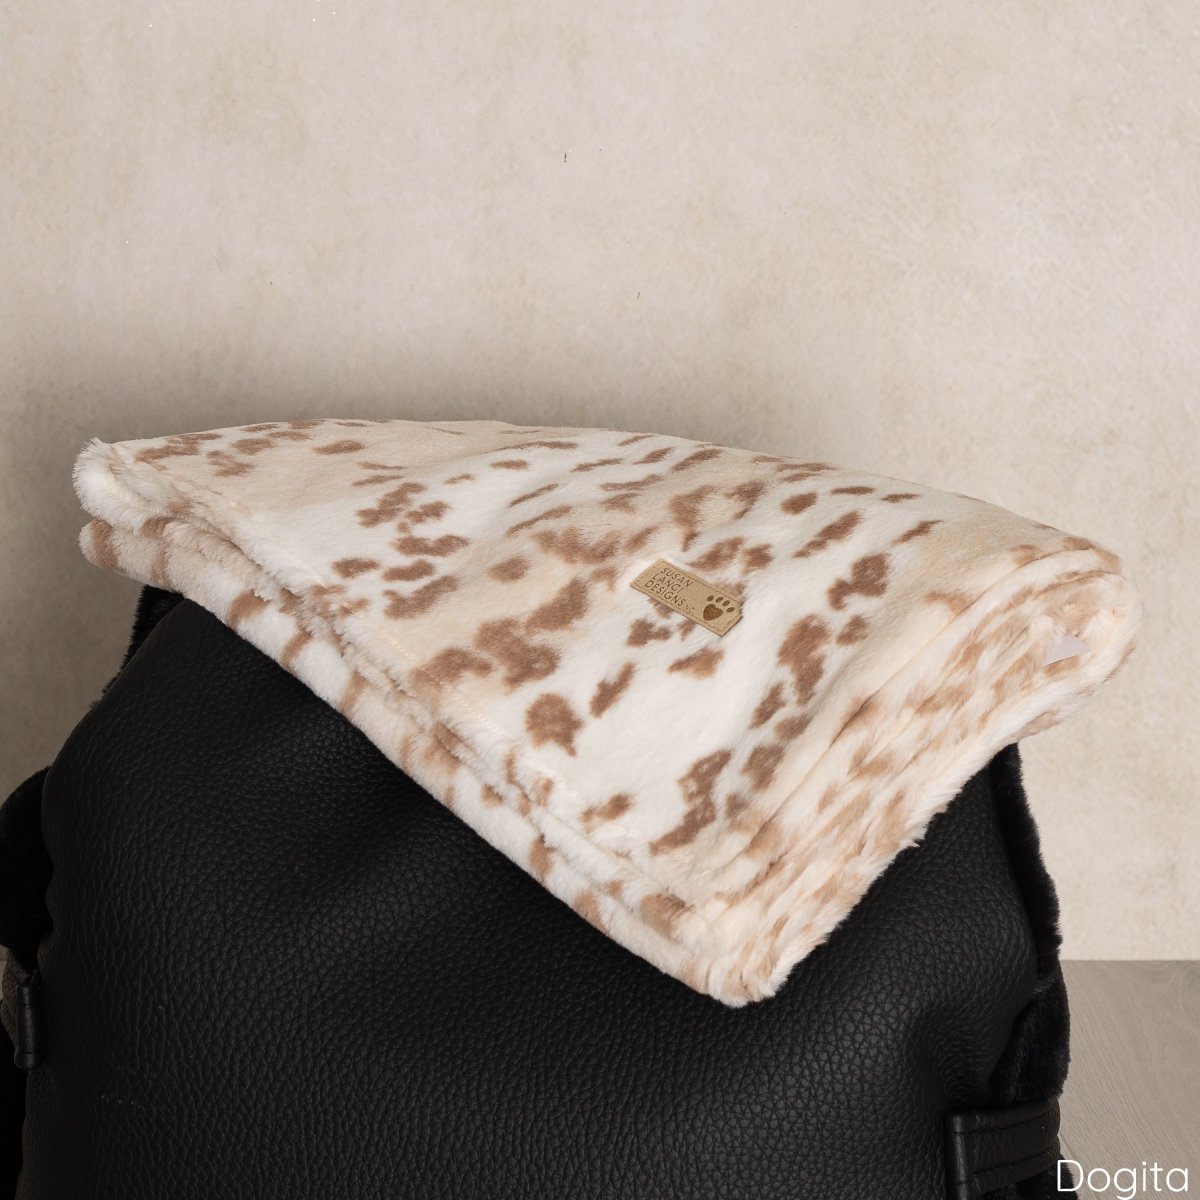 Soft Artic Snow Leopard Deken - Susan Lanci Designs